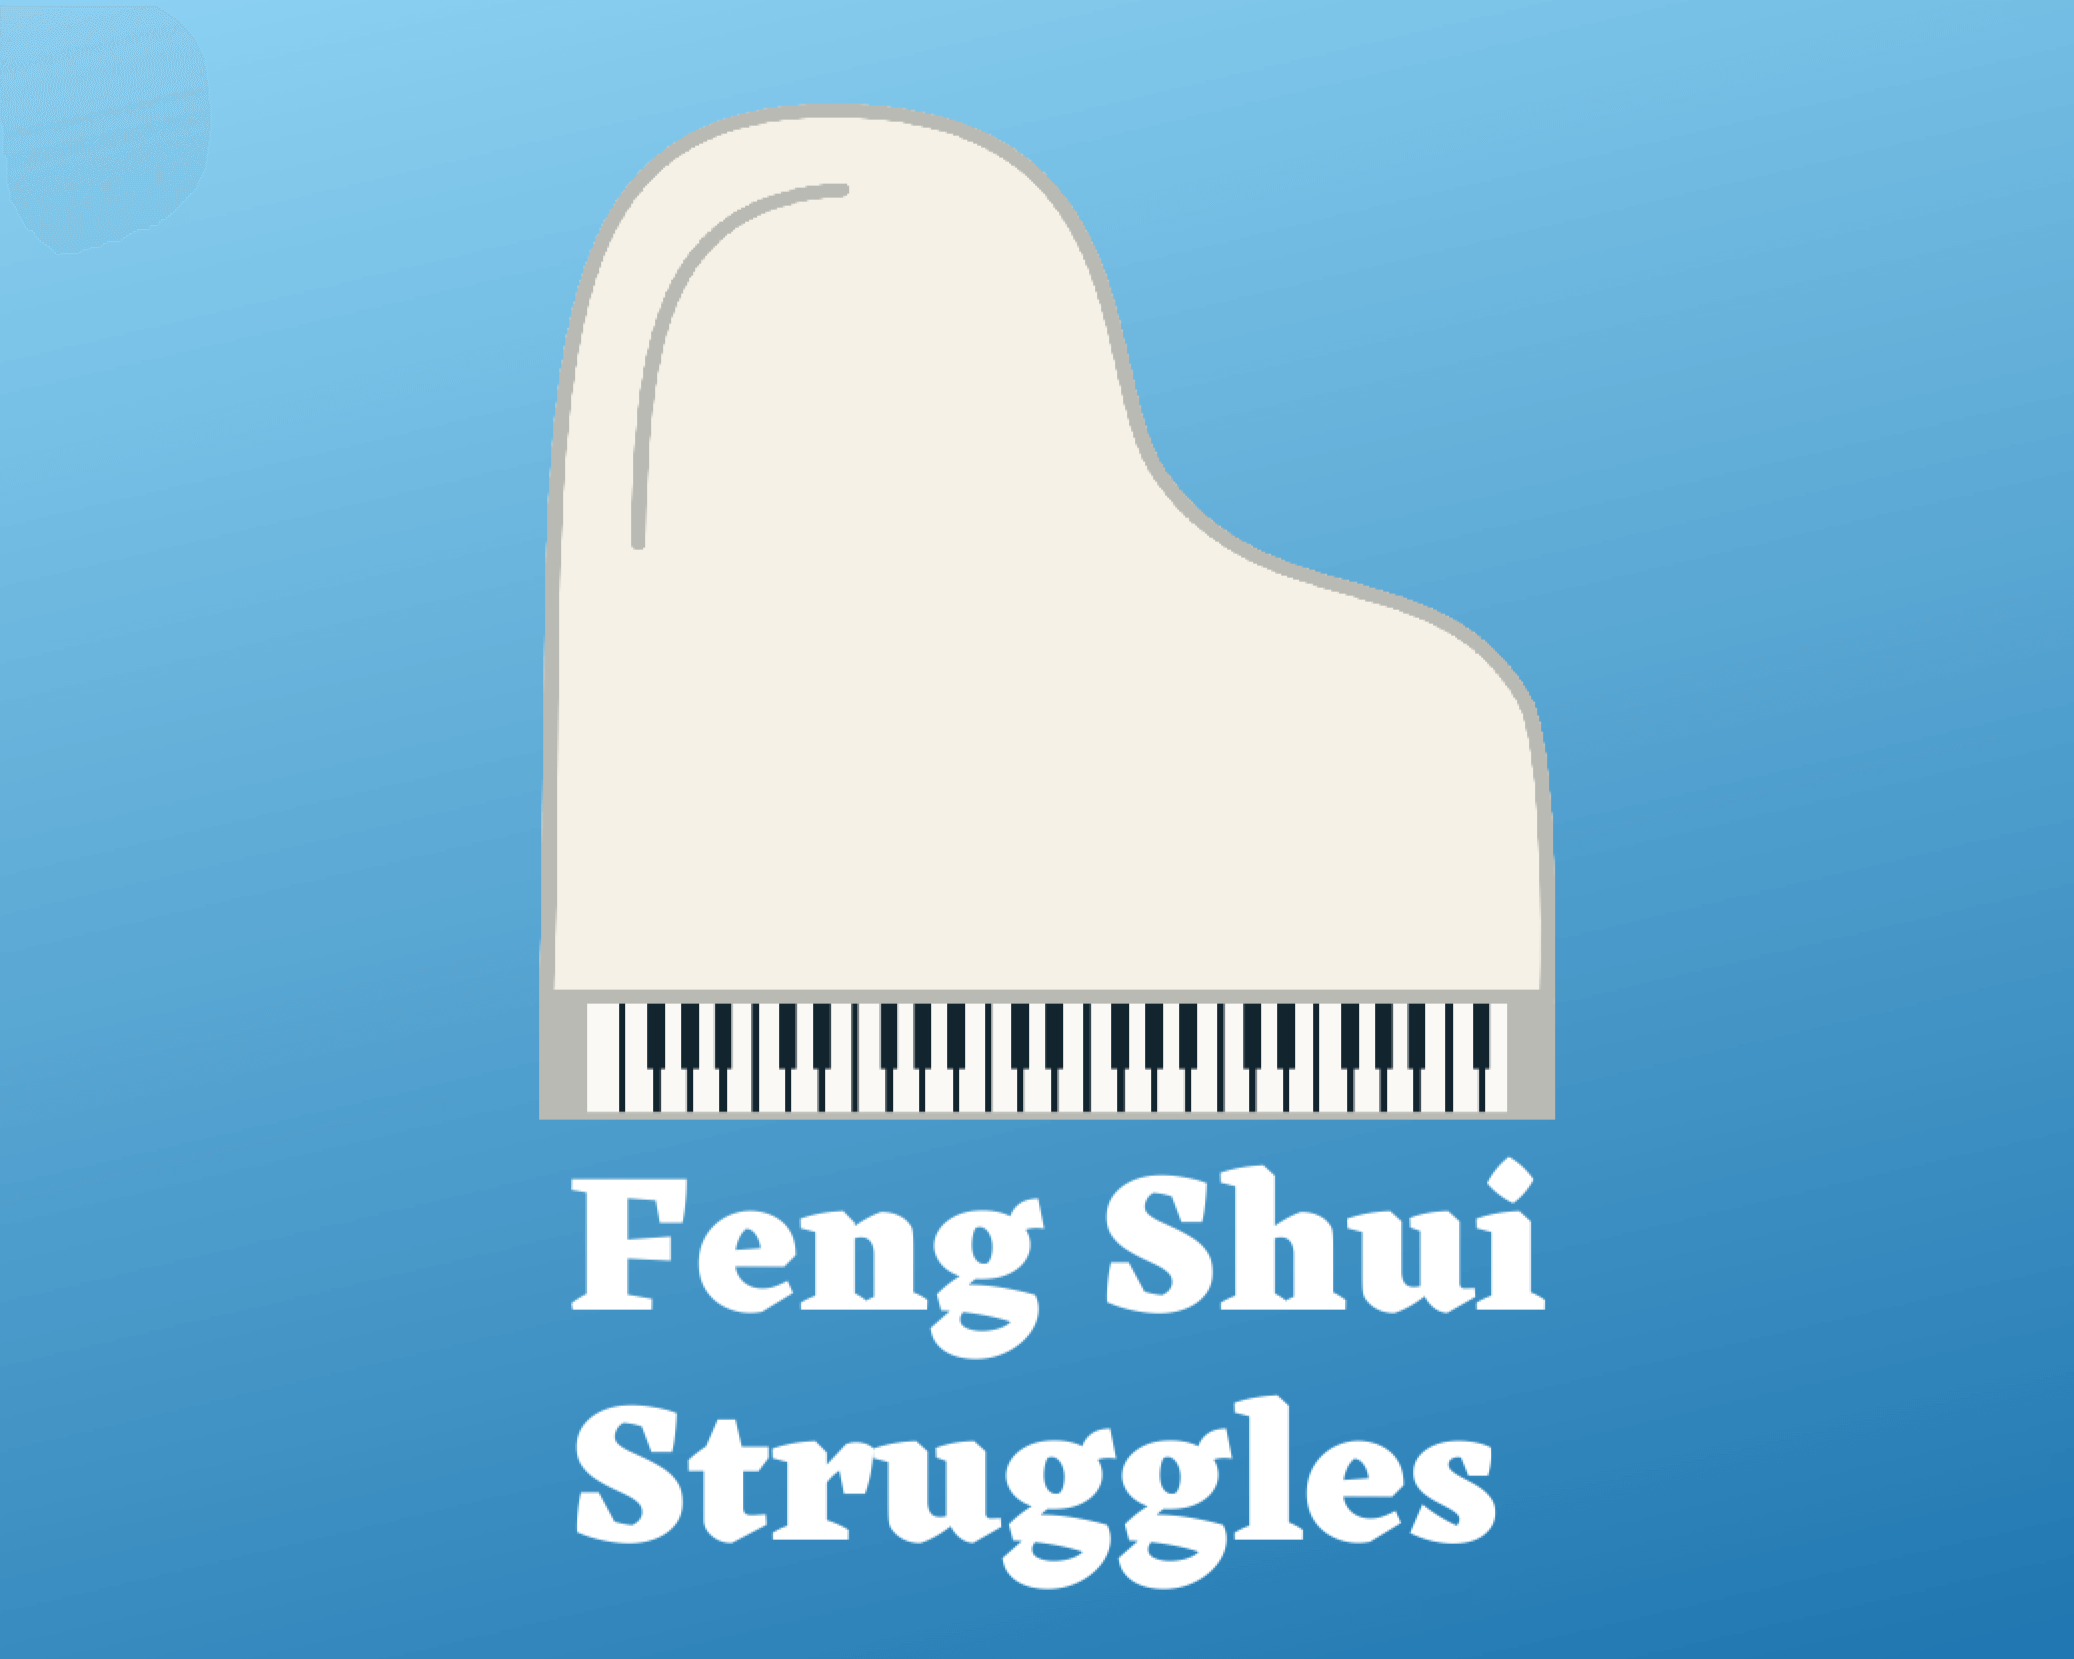 feng-shui-struggles-poster